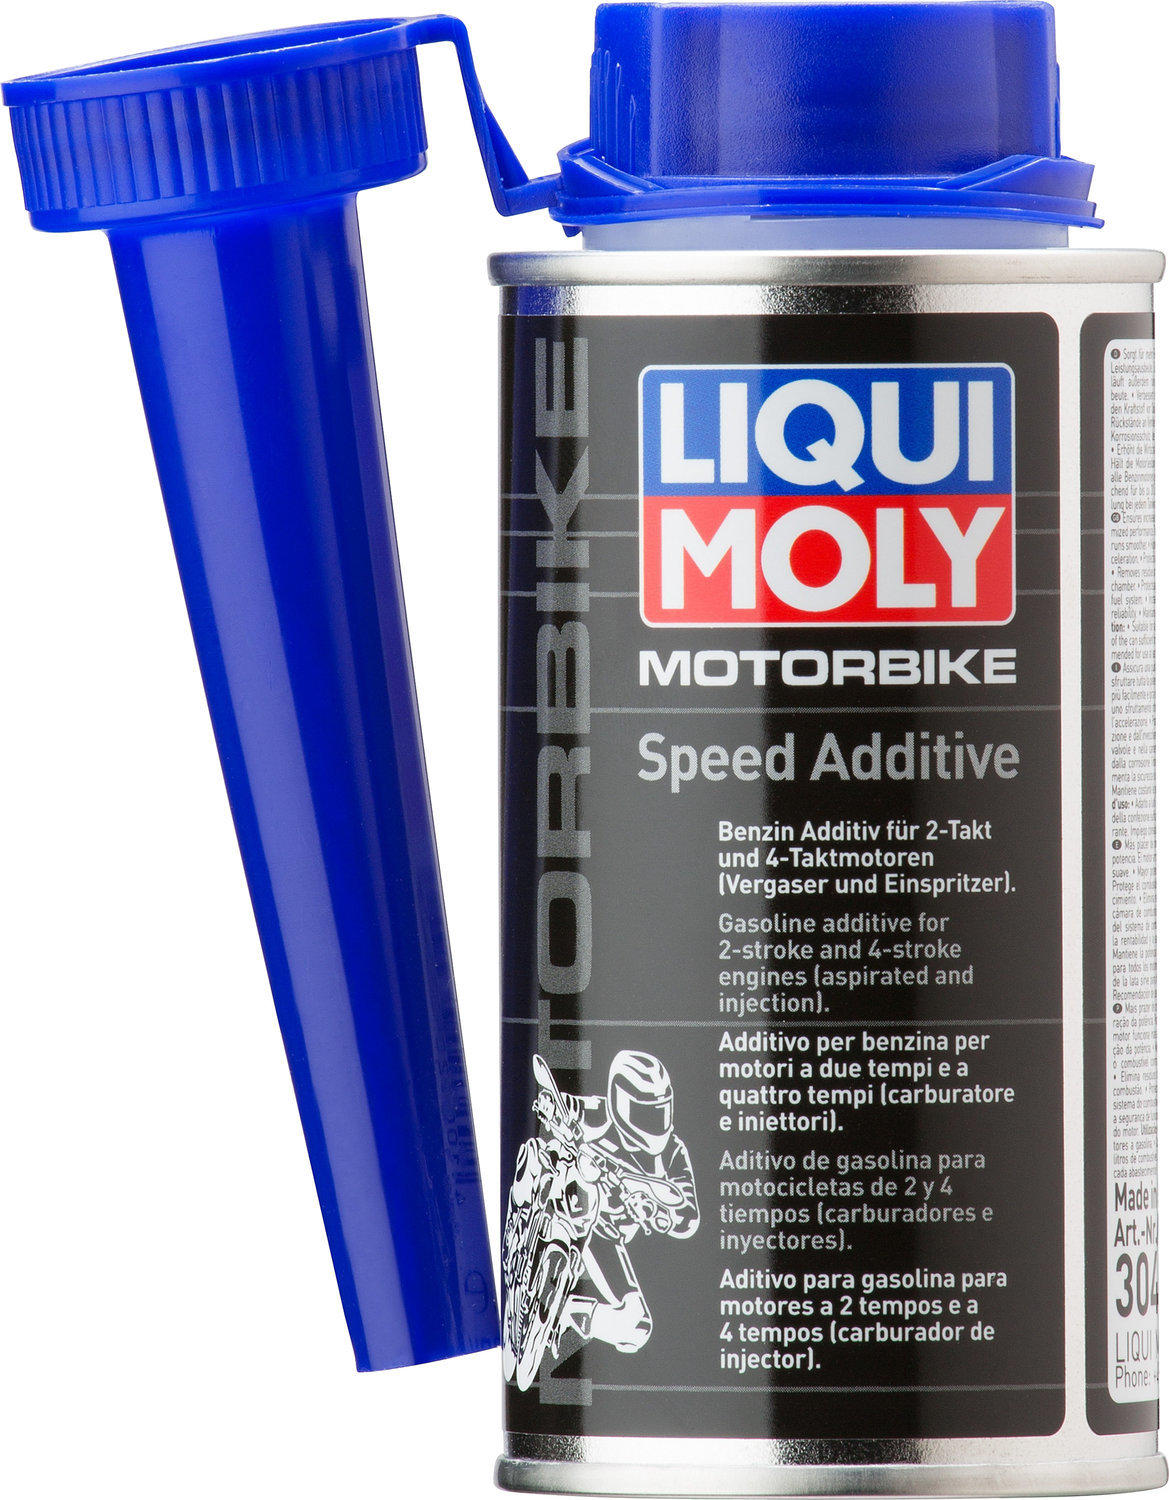 LIQUI MOLY Motorbike Speed Additive (150 ml) Erfahrungen 3.7/5 Sternen